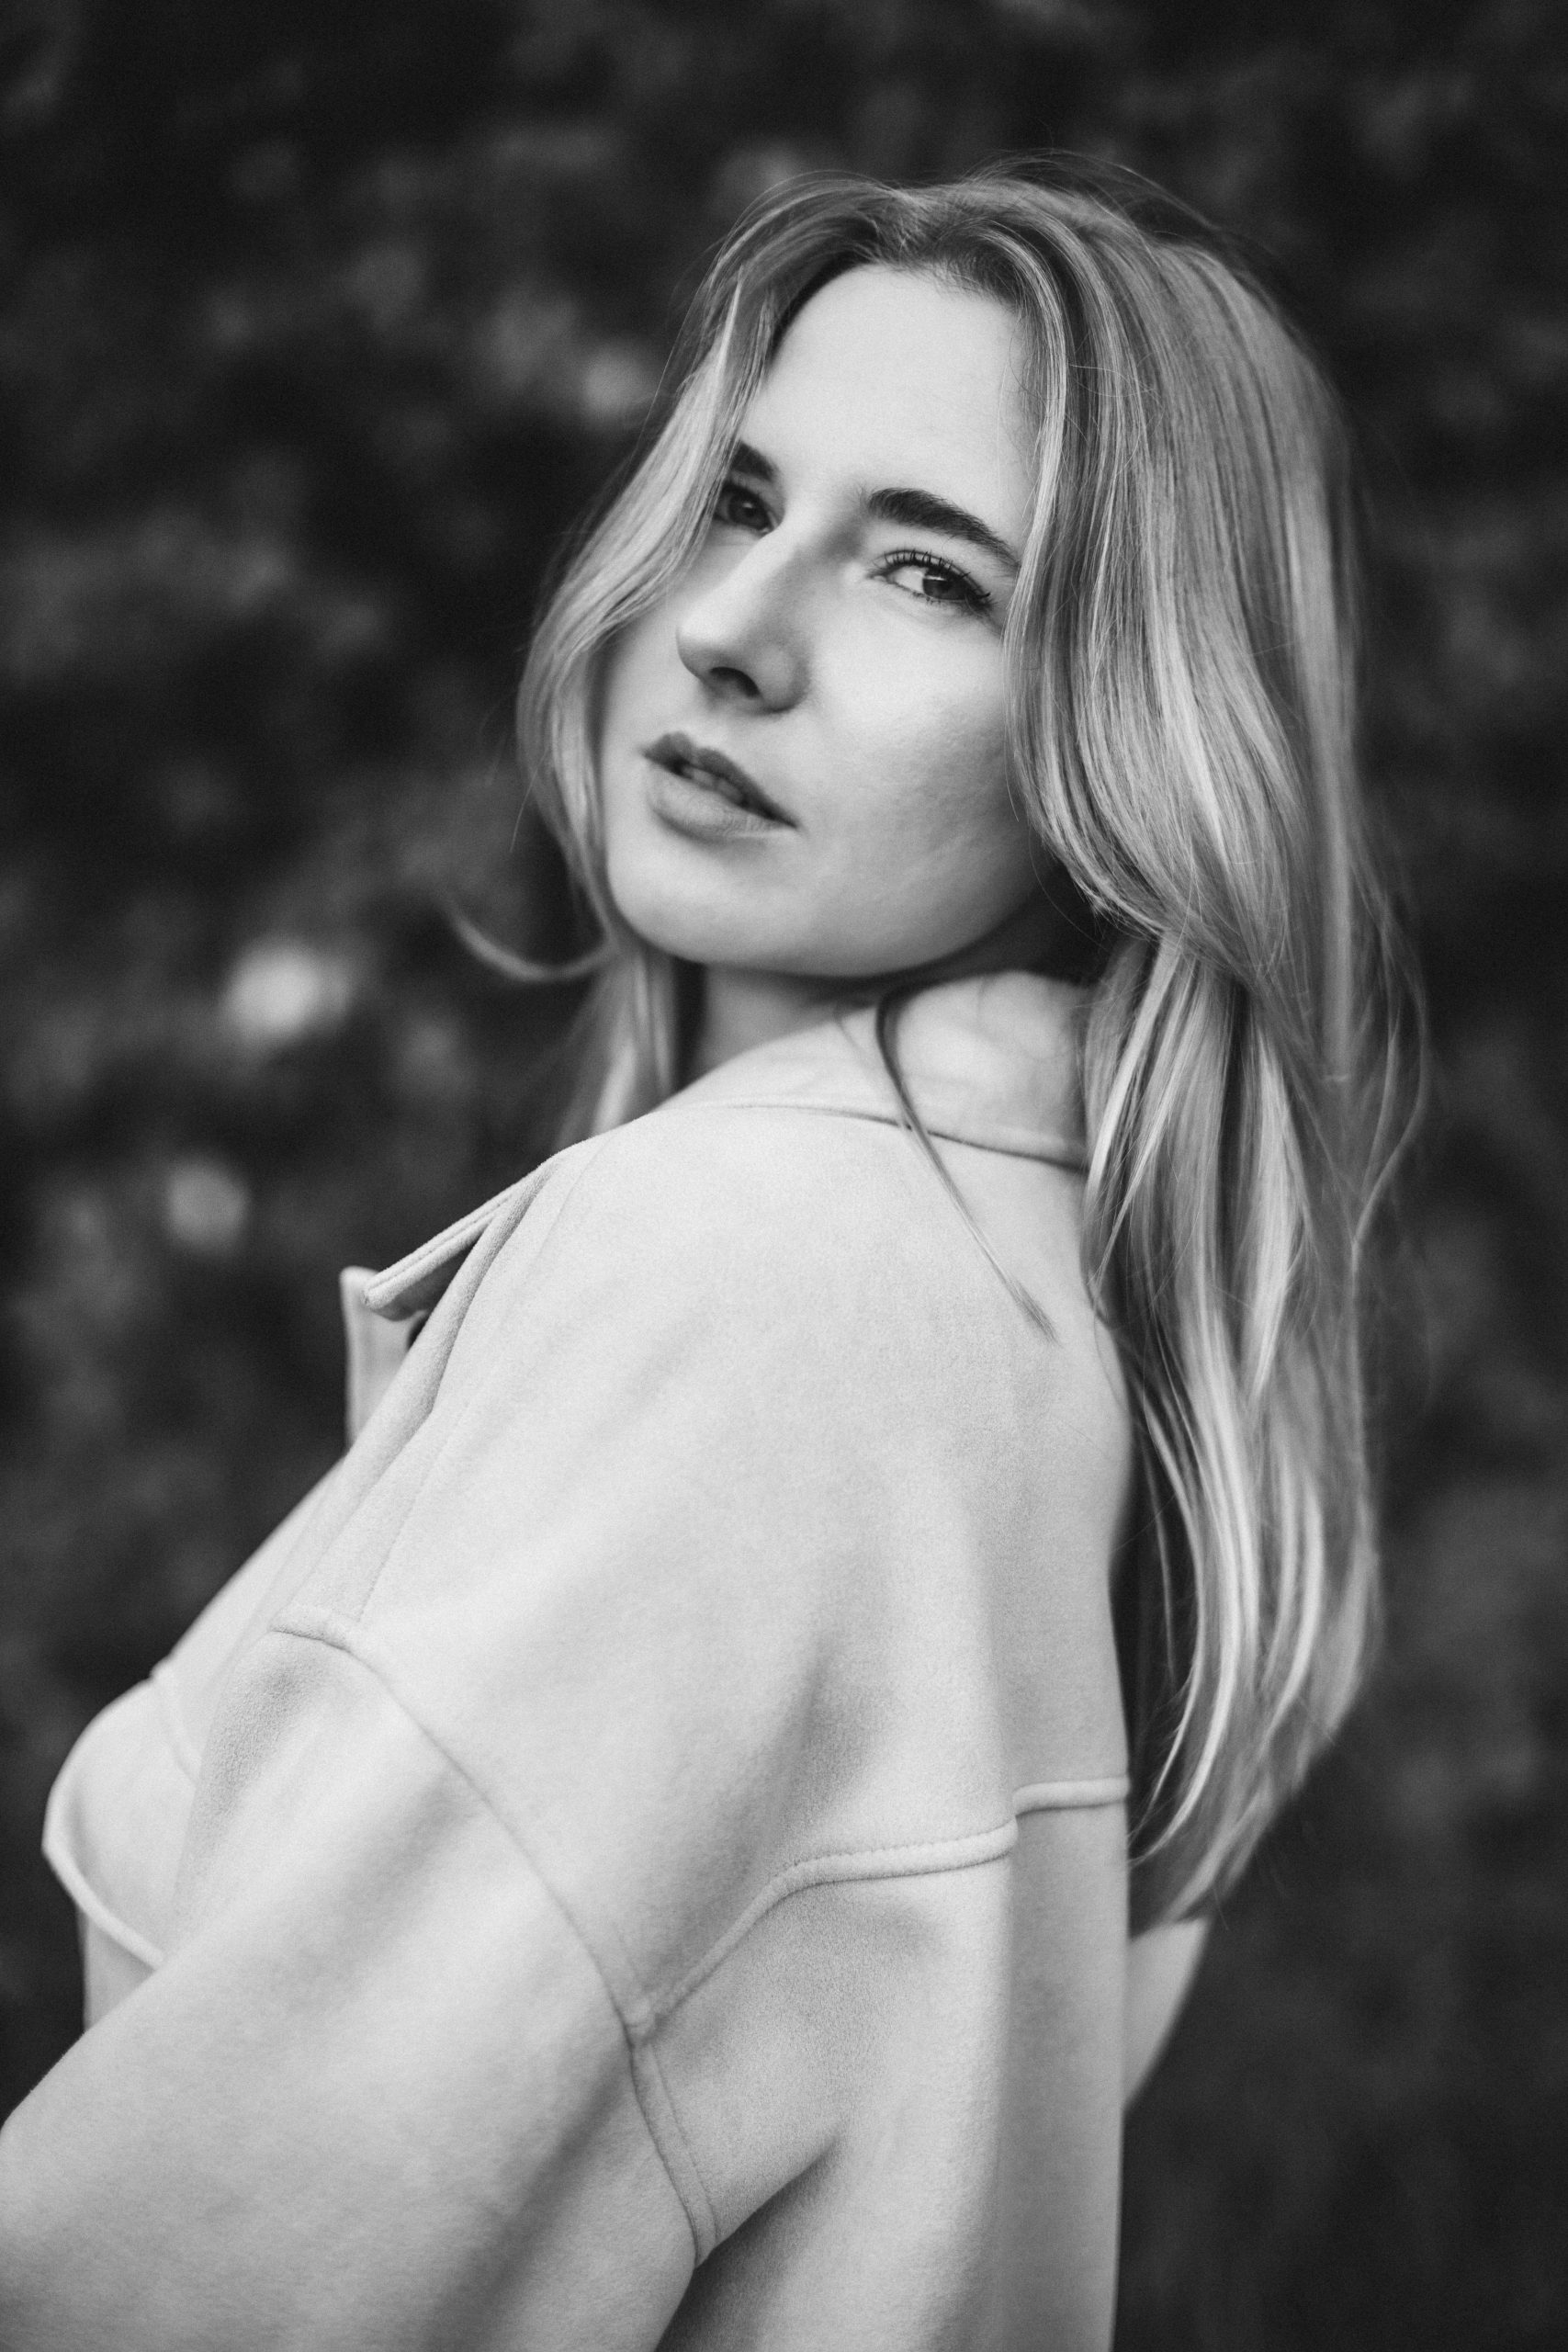 Schwarz-weiß Foto von einer schönen, jungen Frau